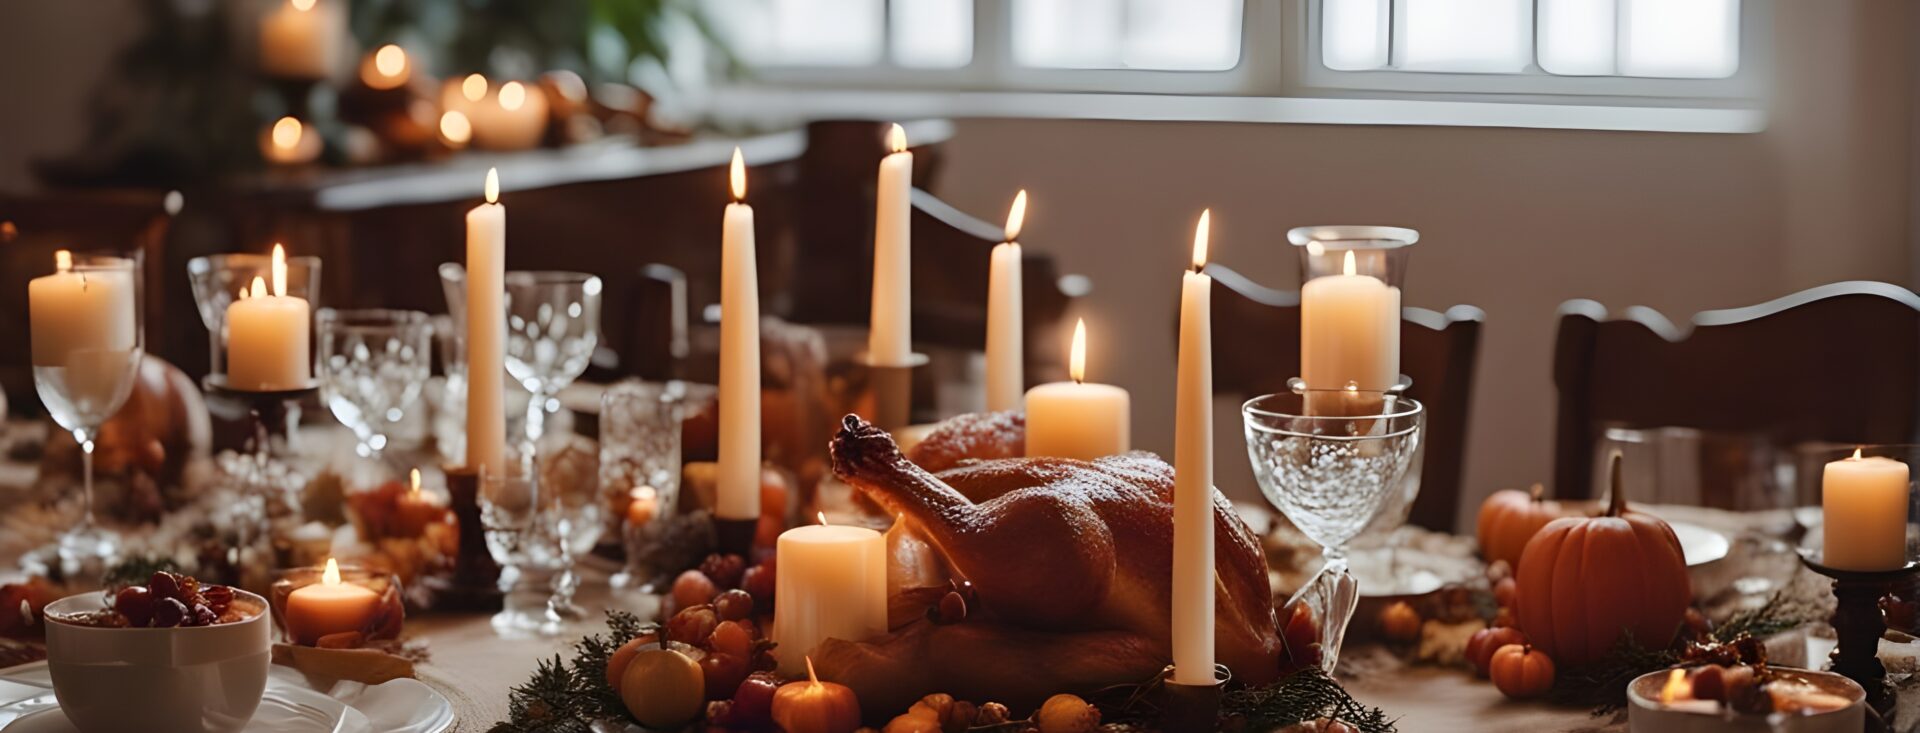 Repas sur une table pour Thanksgiving.